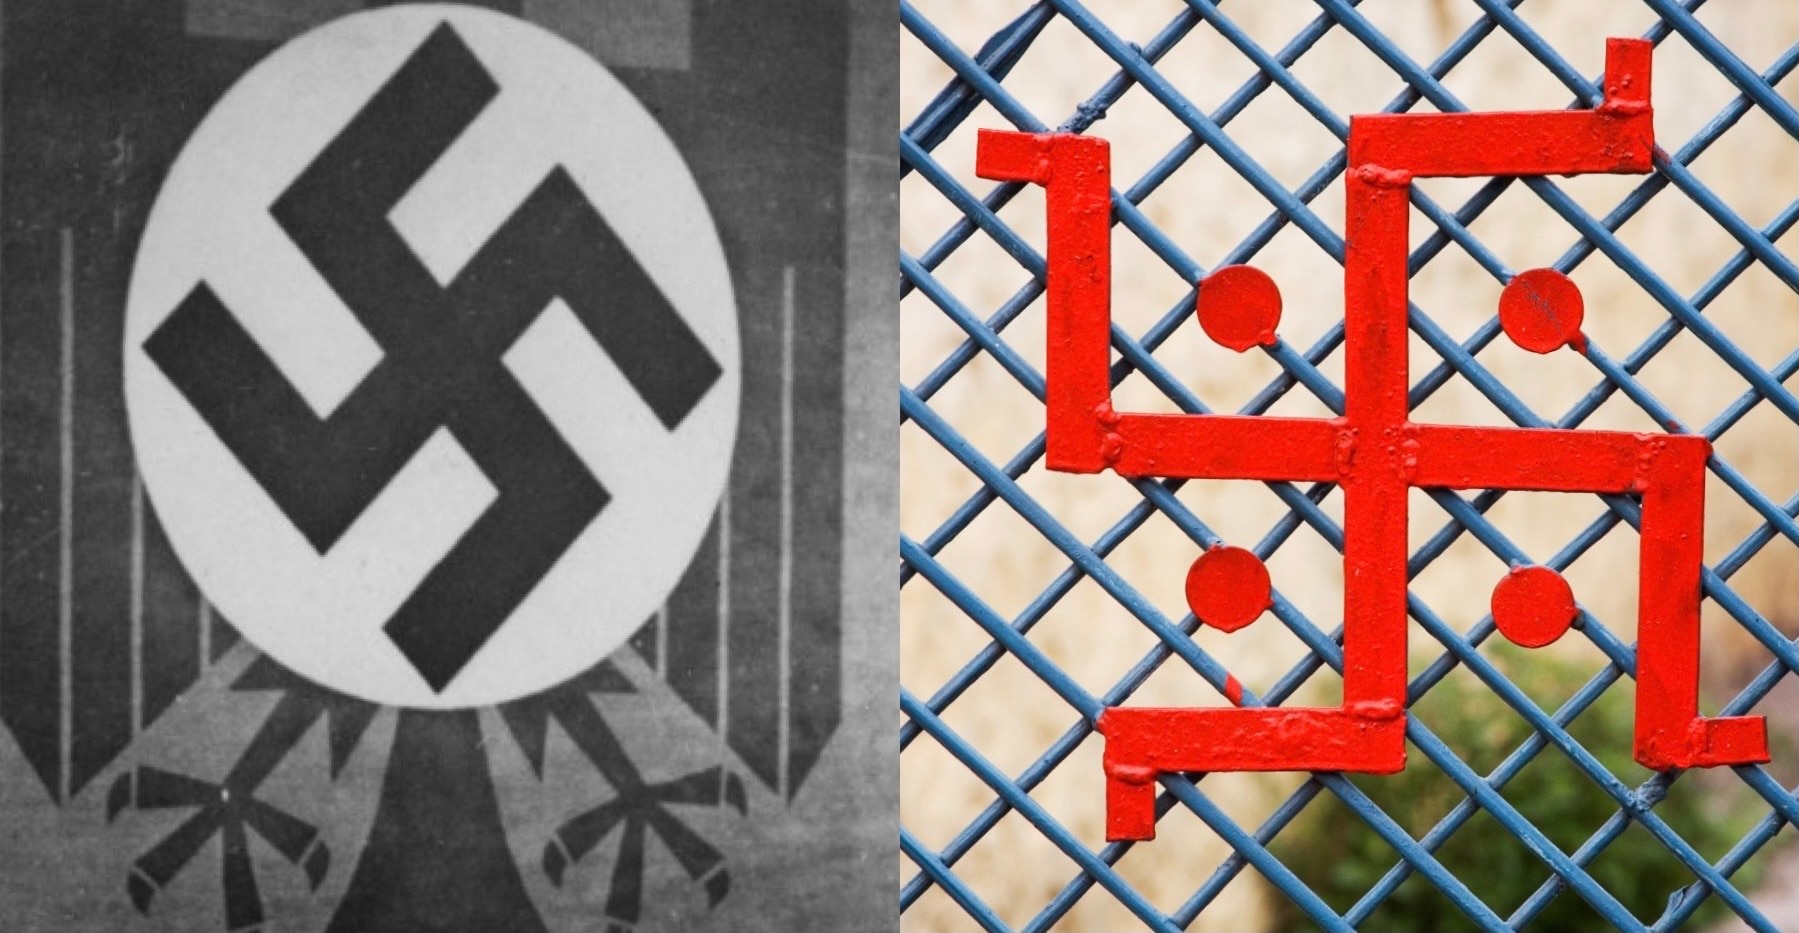 nazi symbol and swastika